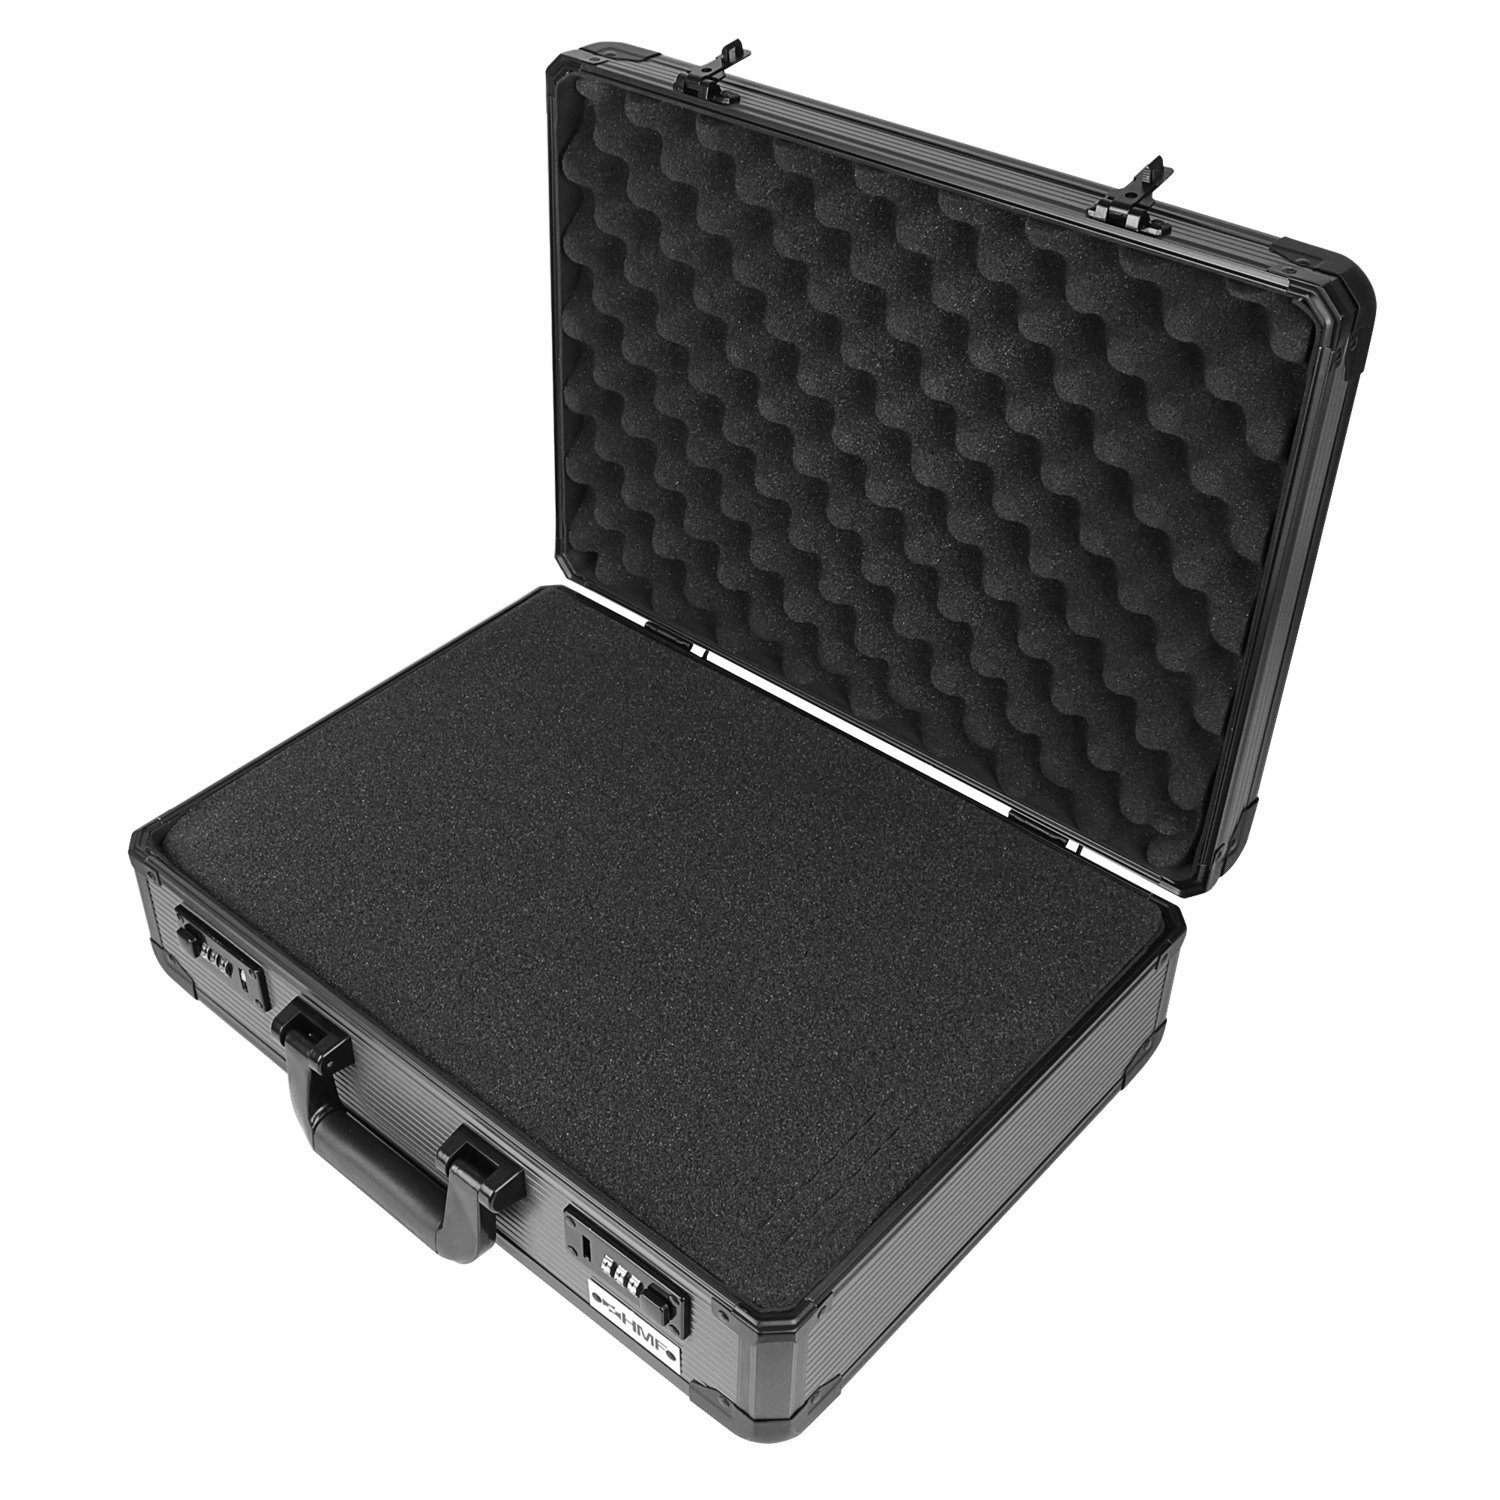 HMF Kameratasche Transportkoffer für Kamera Equipment, Waffen und Dokumente, abschließbarer Aufbewahrungskoffer, 46x33x15 cm